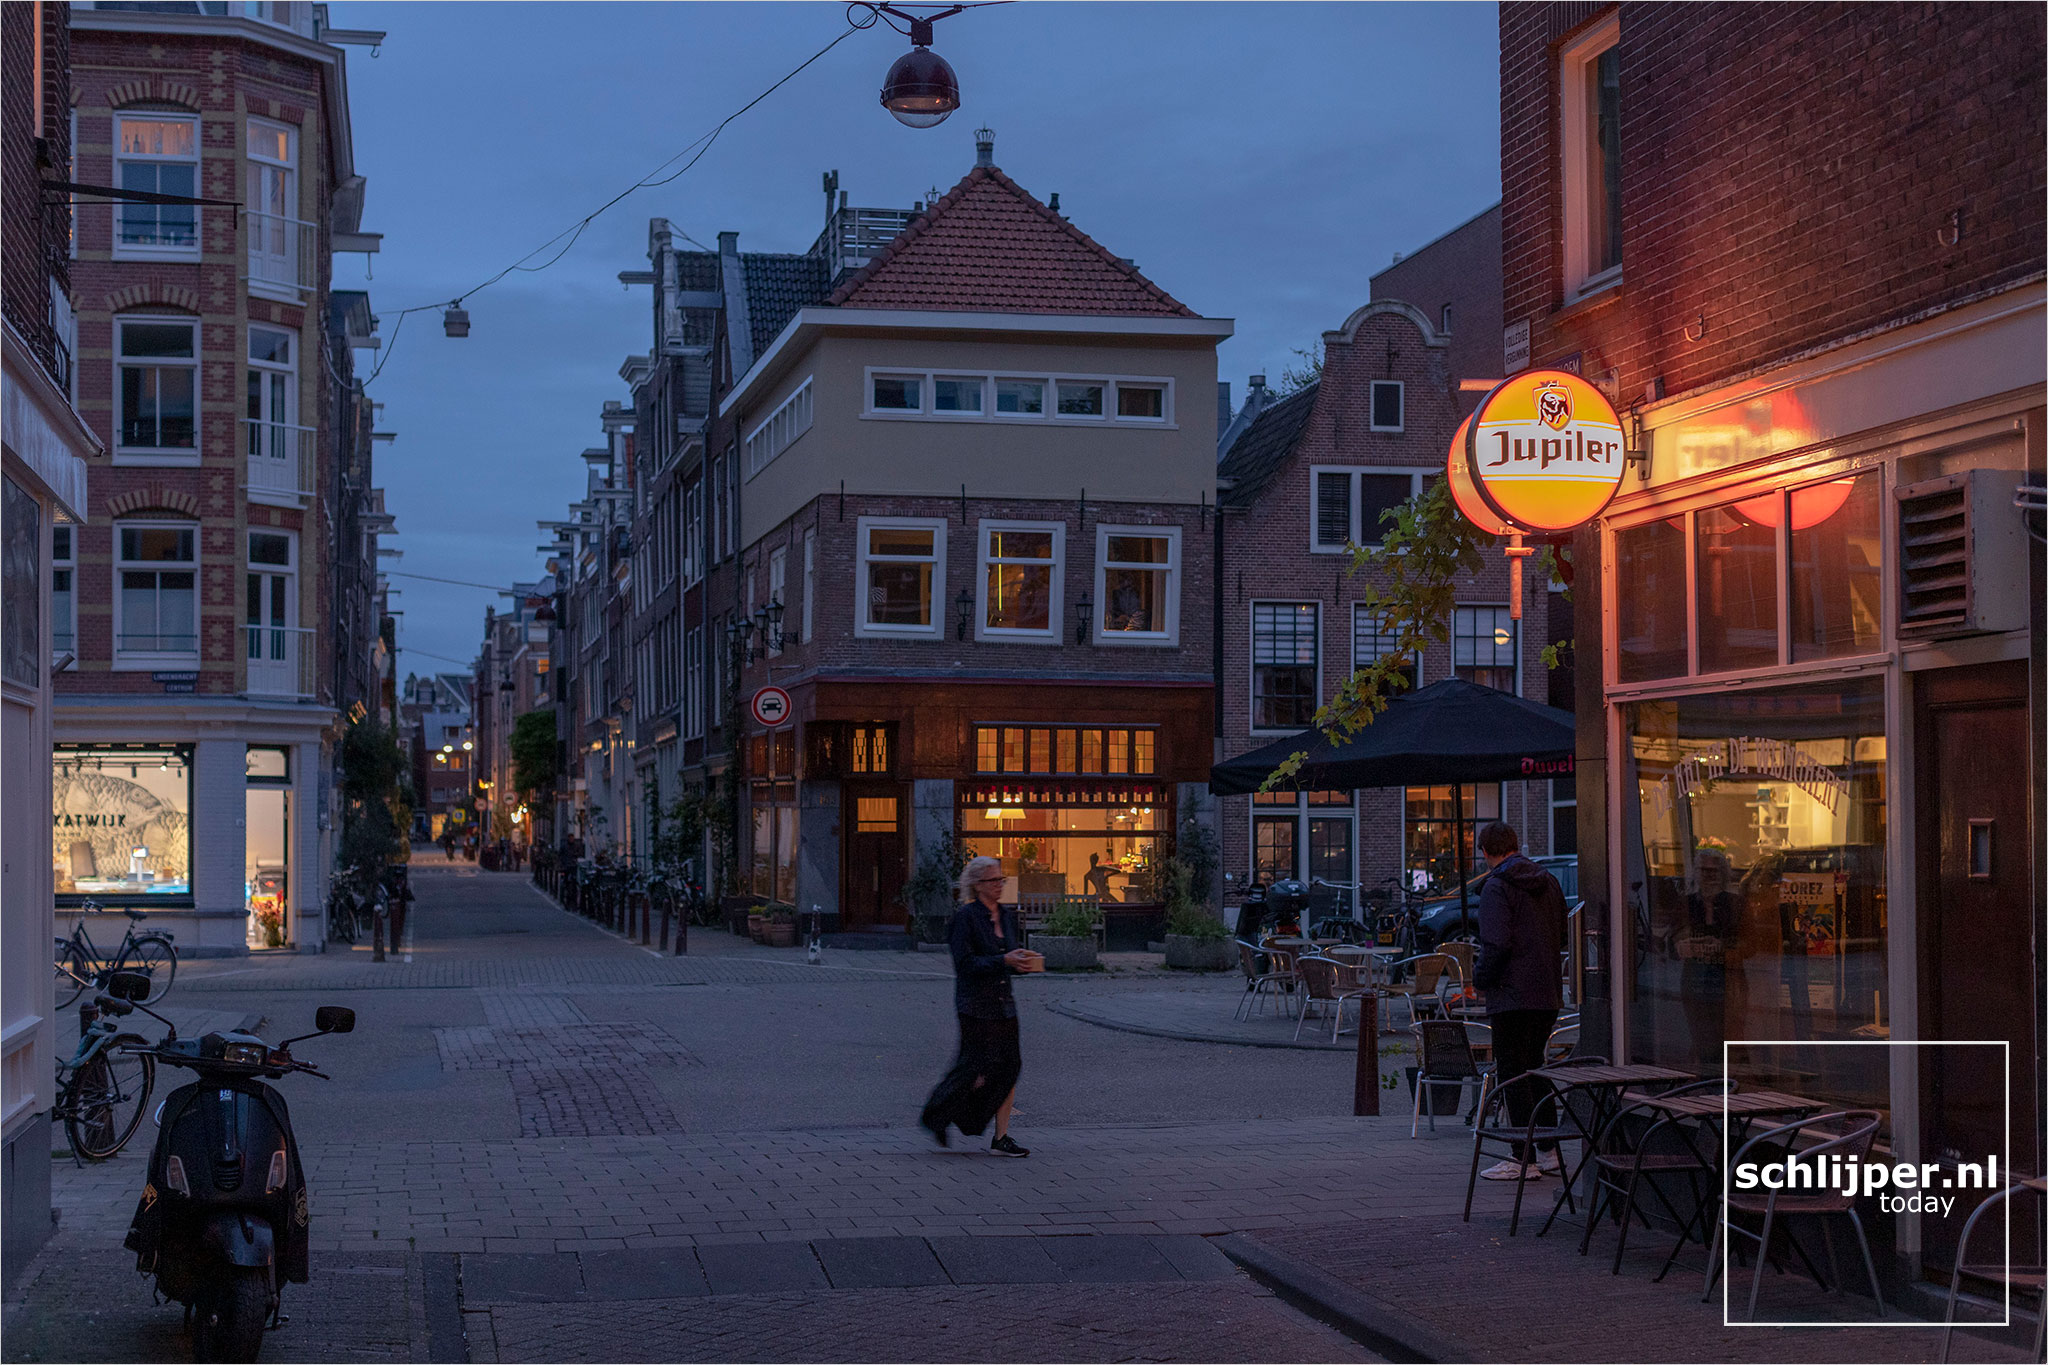 The Netherlands, Amsterdam, 30 september 2021